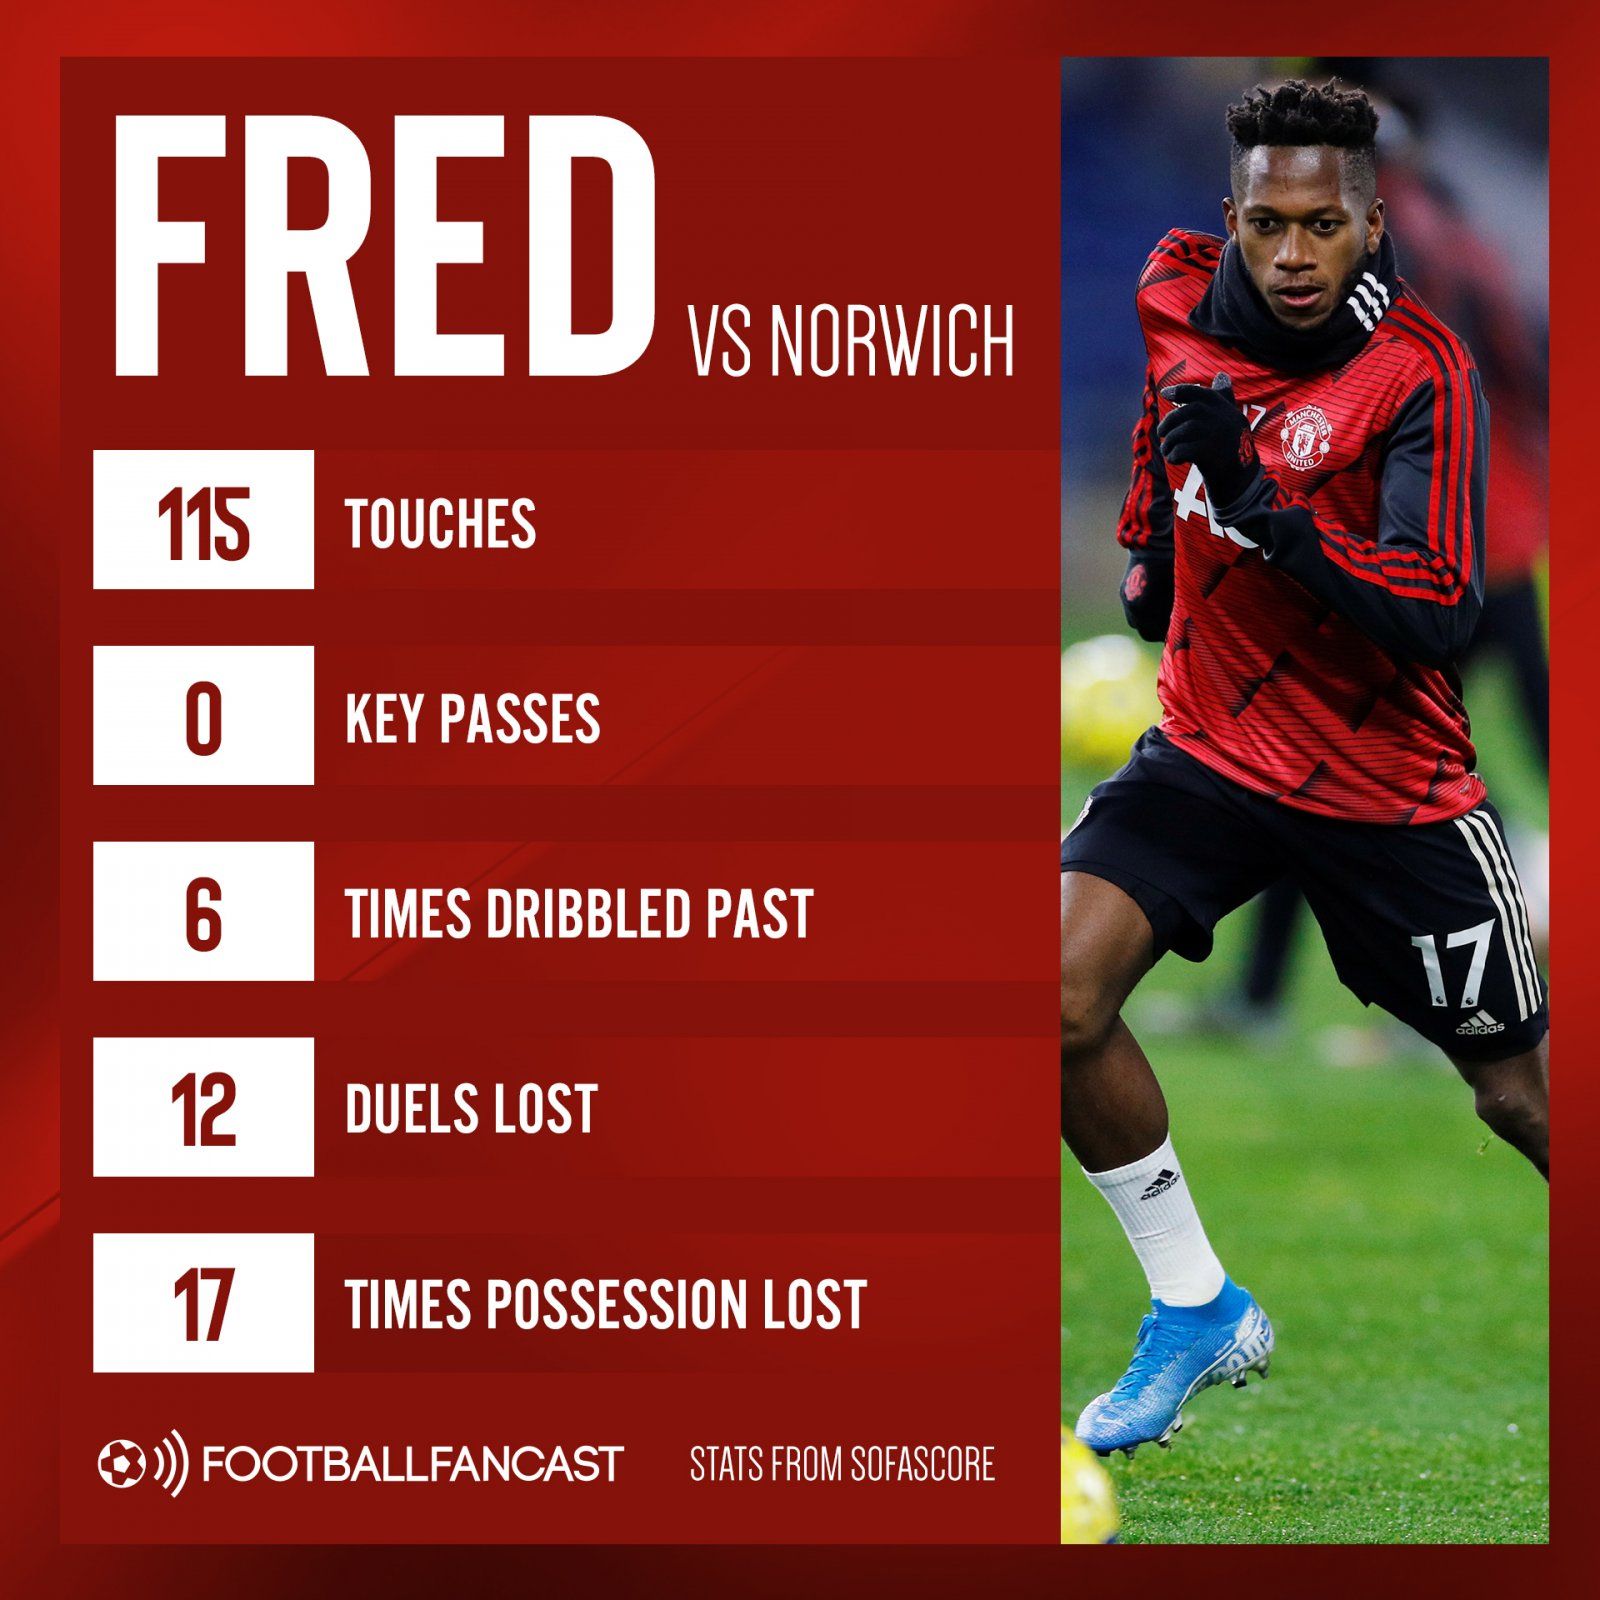 Fred vs Norwich